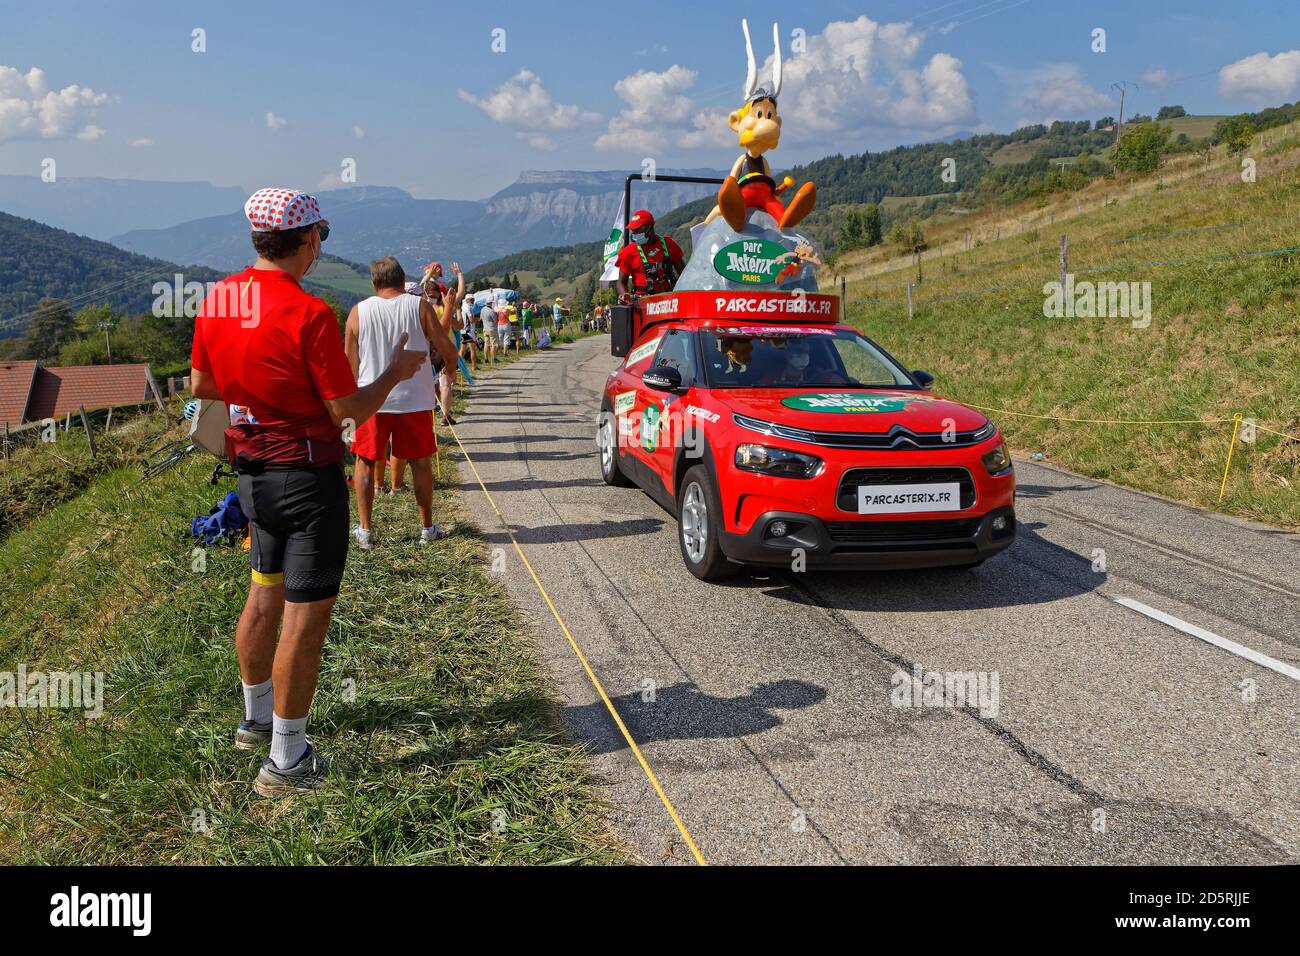 REVEL, FRANCIA, 15 de septiembre de 2020 : espectadores y caravana anunciante en el Tour de Francia carreteras. Tour de Francia ha sido descrito como el mo del mundo Foto de stock